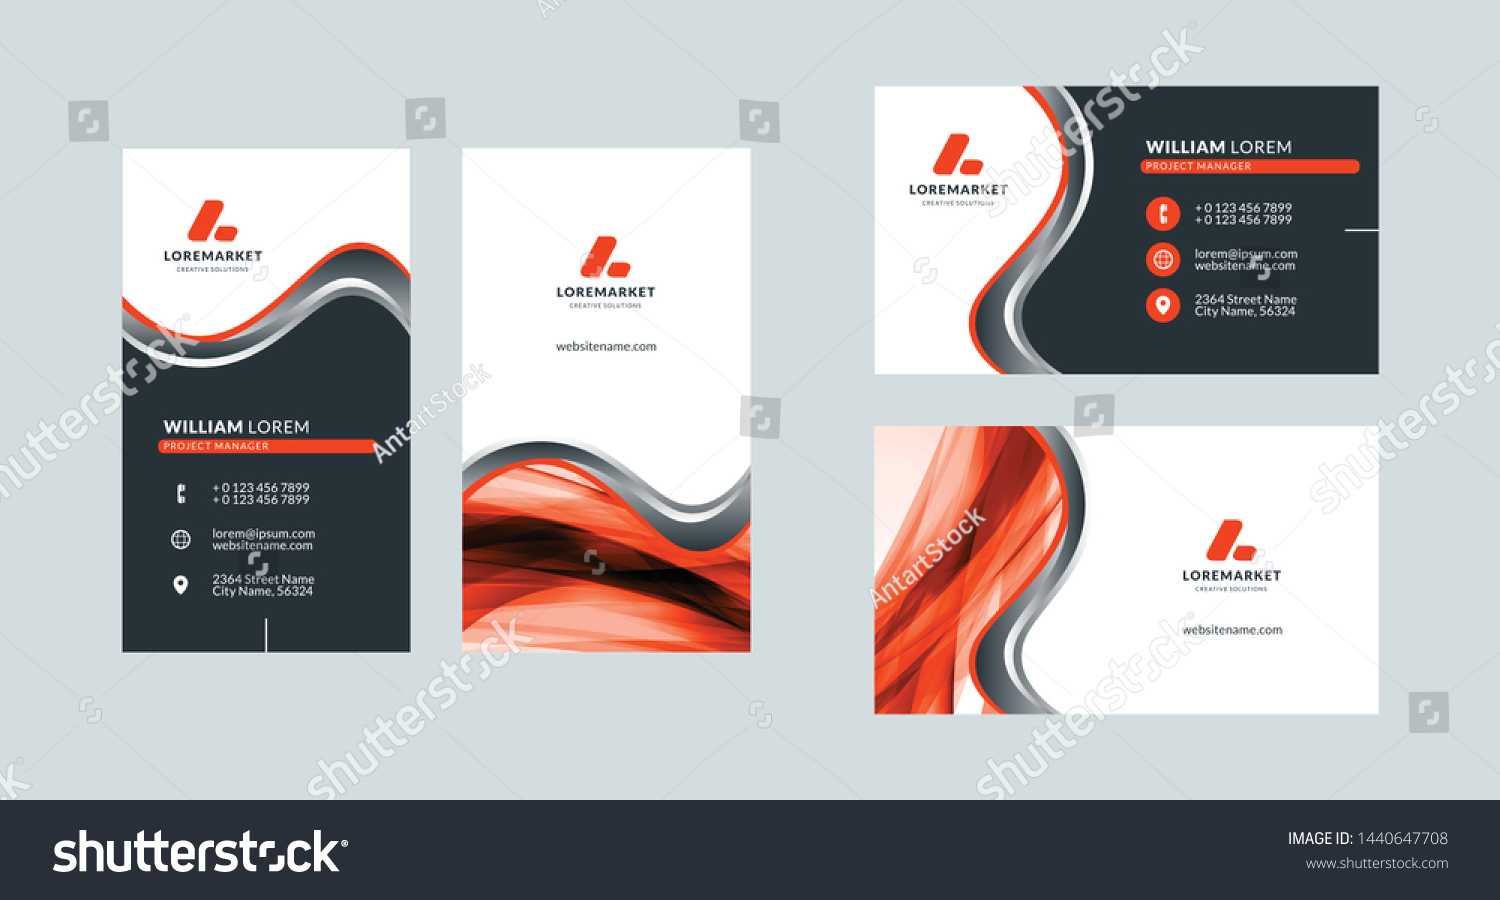 Business Card Template Portrait Landscape Layout Stock Throughout Landscaping Business Card Template